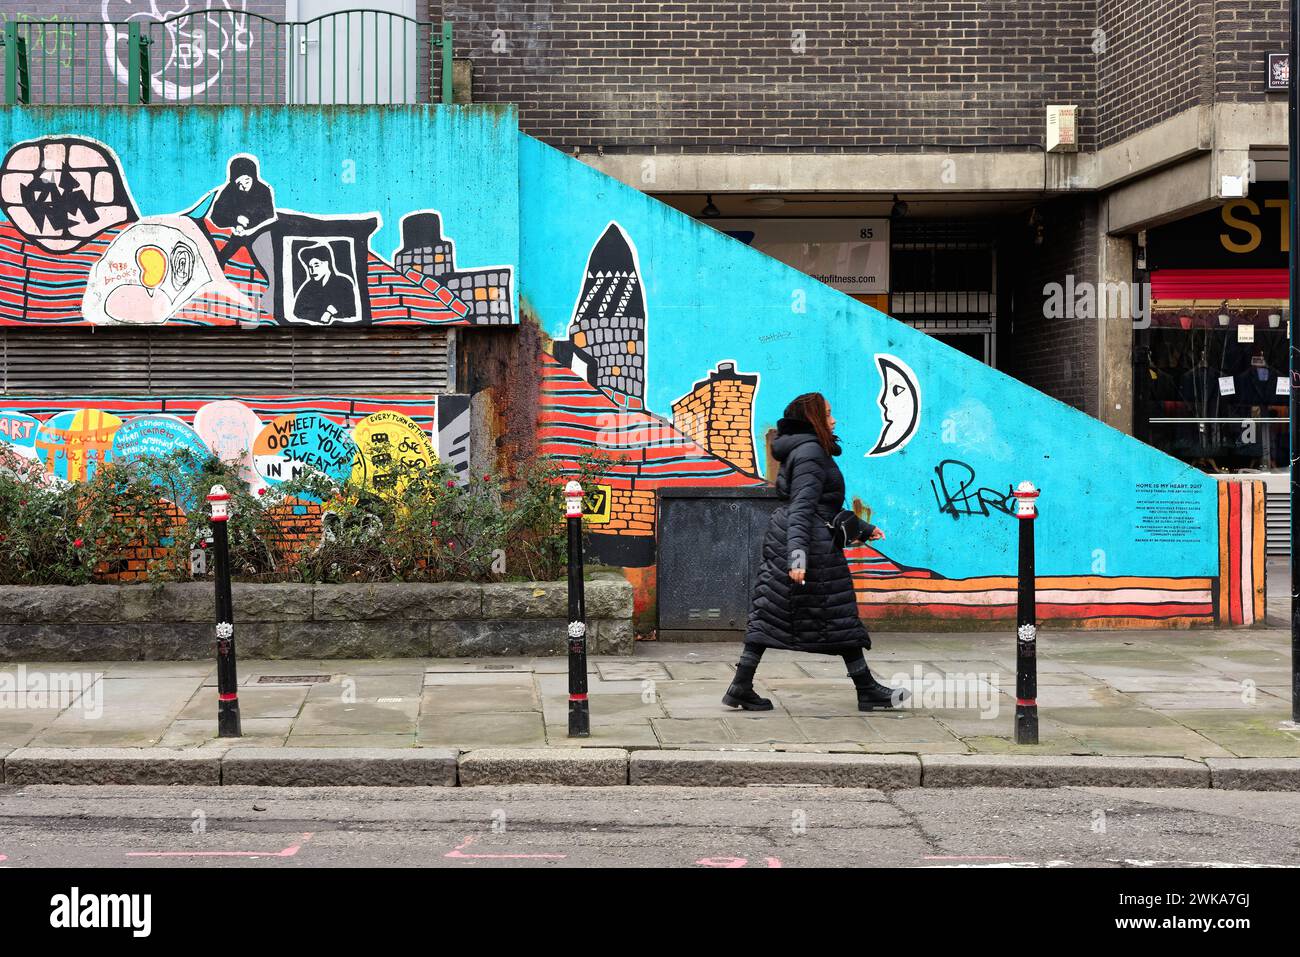 Une jeune femme adulte marchant par le Street art coloré dans Middlesex Street Aldgate City de Londres Angleterre Royaume-Uni Banque D'Images